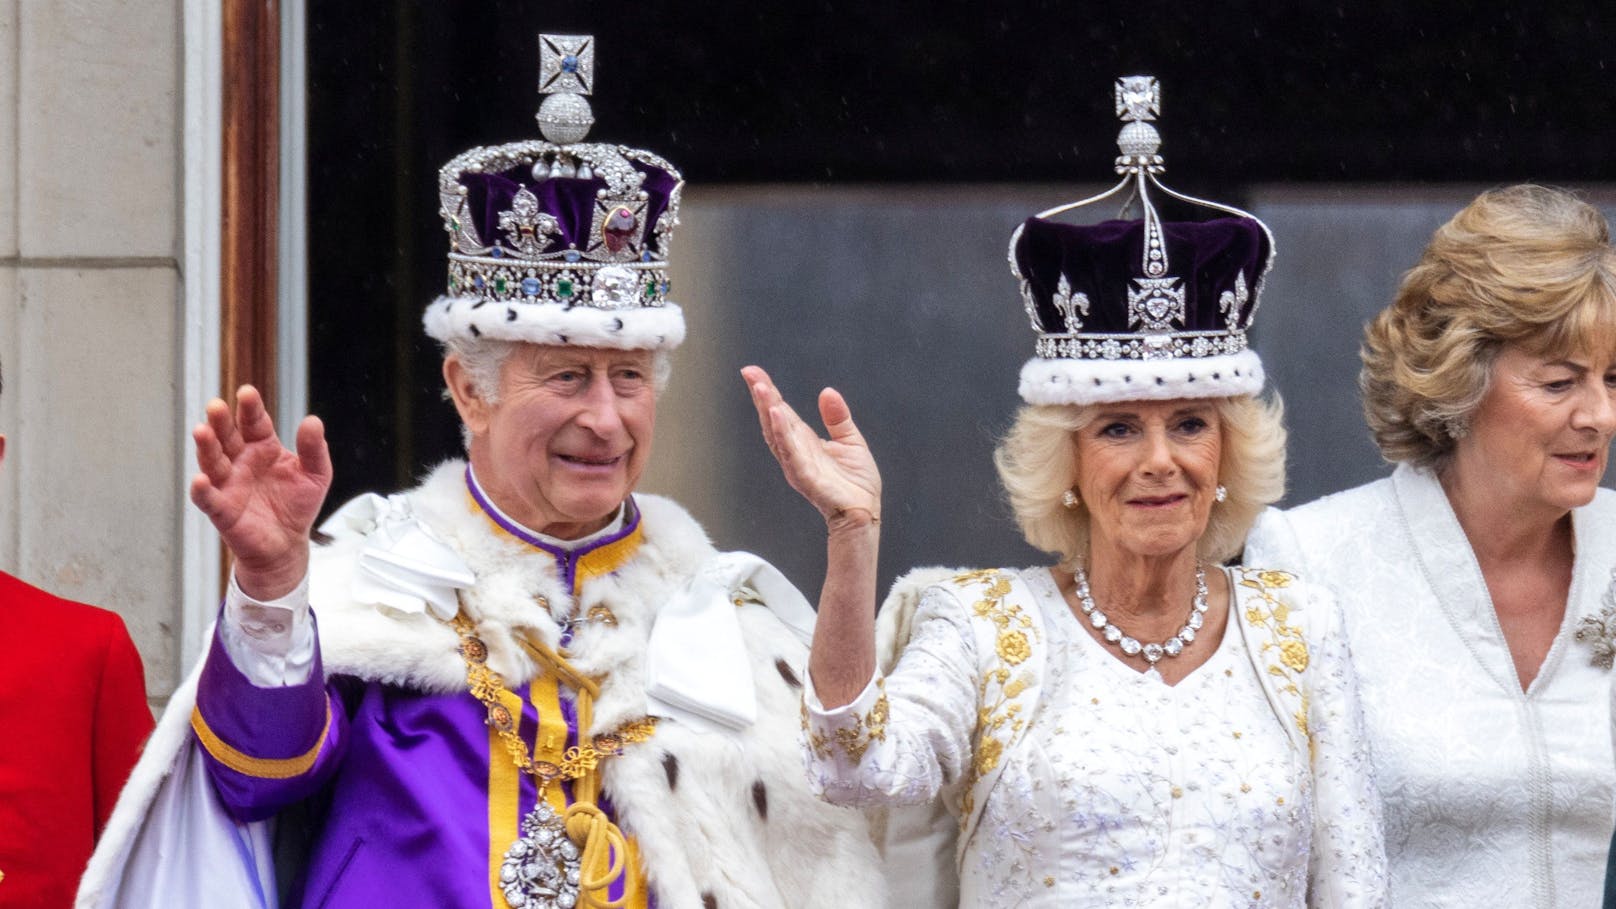 Die Krönung von King Charles III. ging am Samstag, den sechsten Mai über die Bühne und begeisterte Zuschauer aus aller Welt.